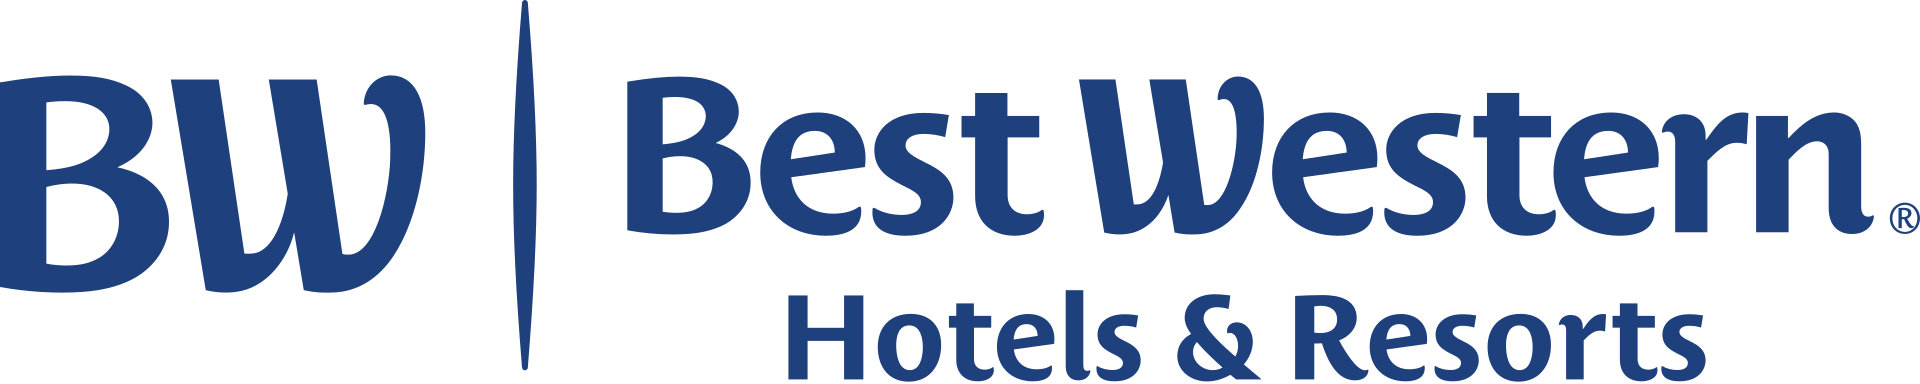 Best Western hotels LOGO